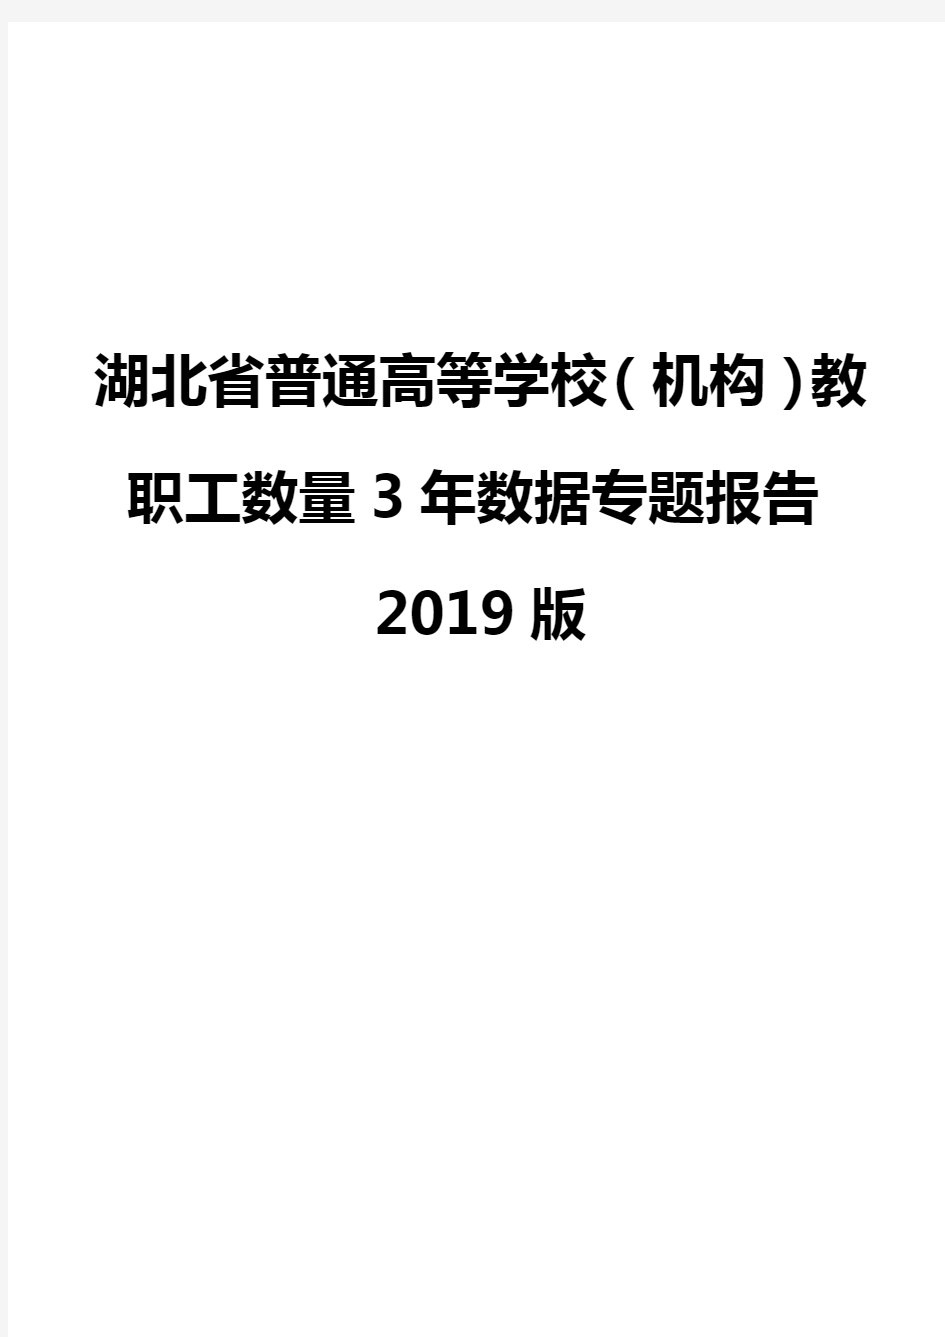 湖北省普通高等学校(机构)教职工数量3年数据专题报告2019版